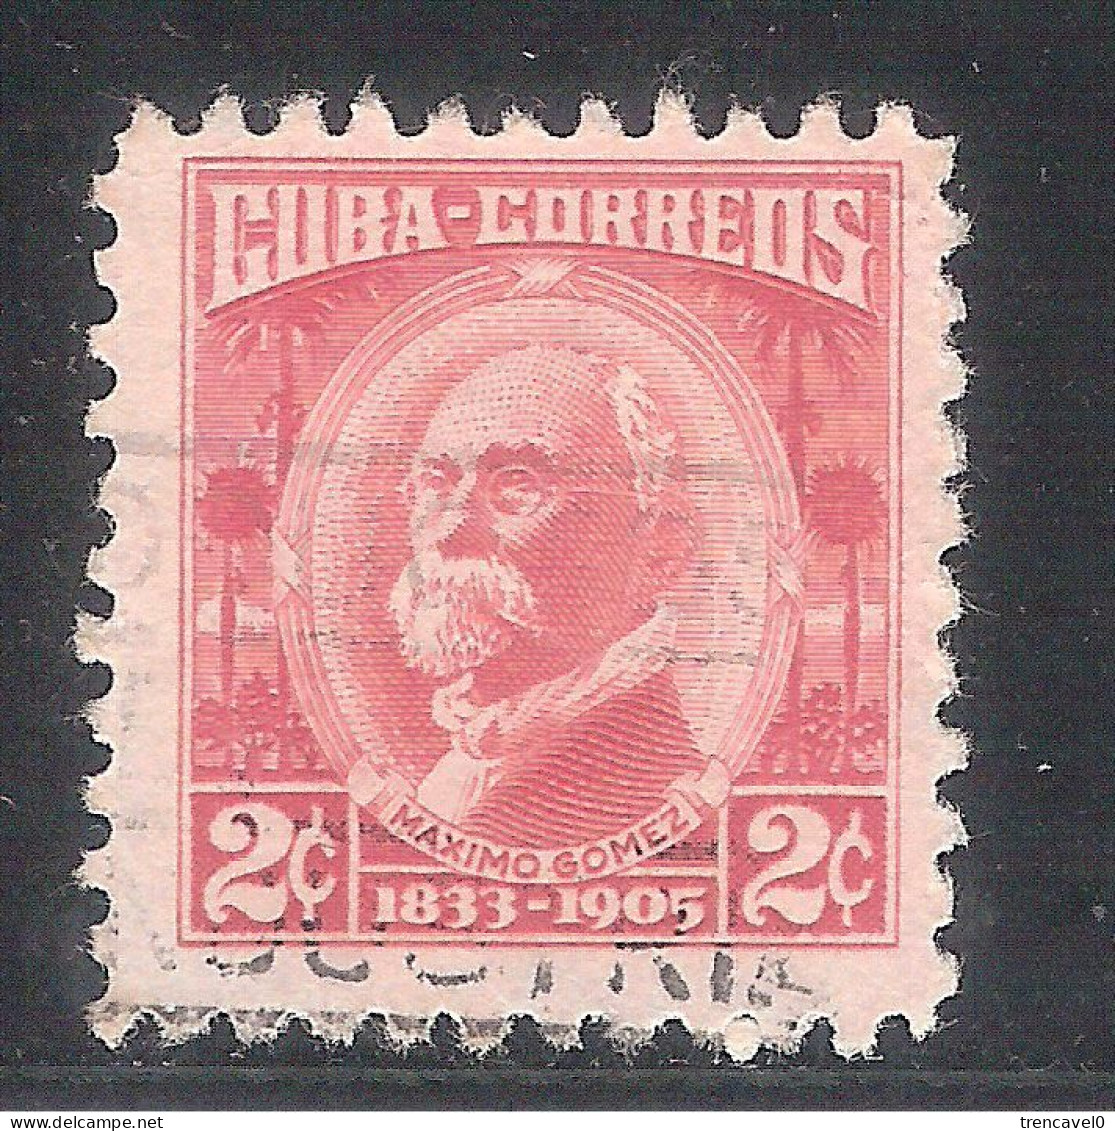 Cuba 1954- 1 Sello Usado Y Circulado - Máximo Gómez - Used Stamps